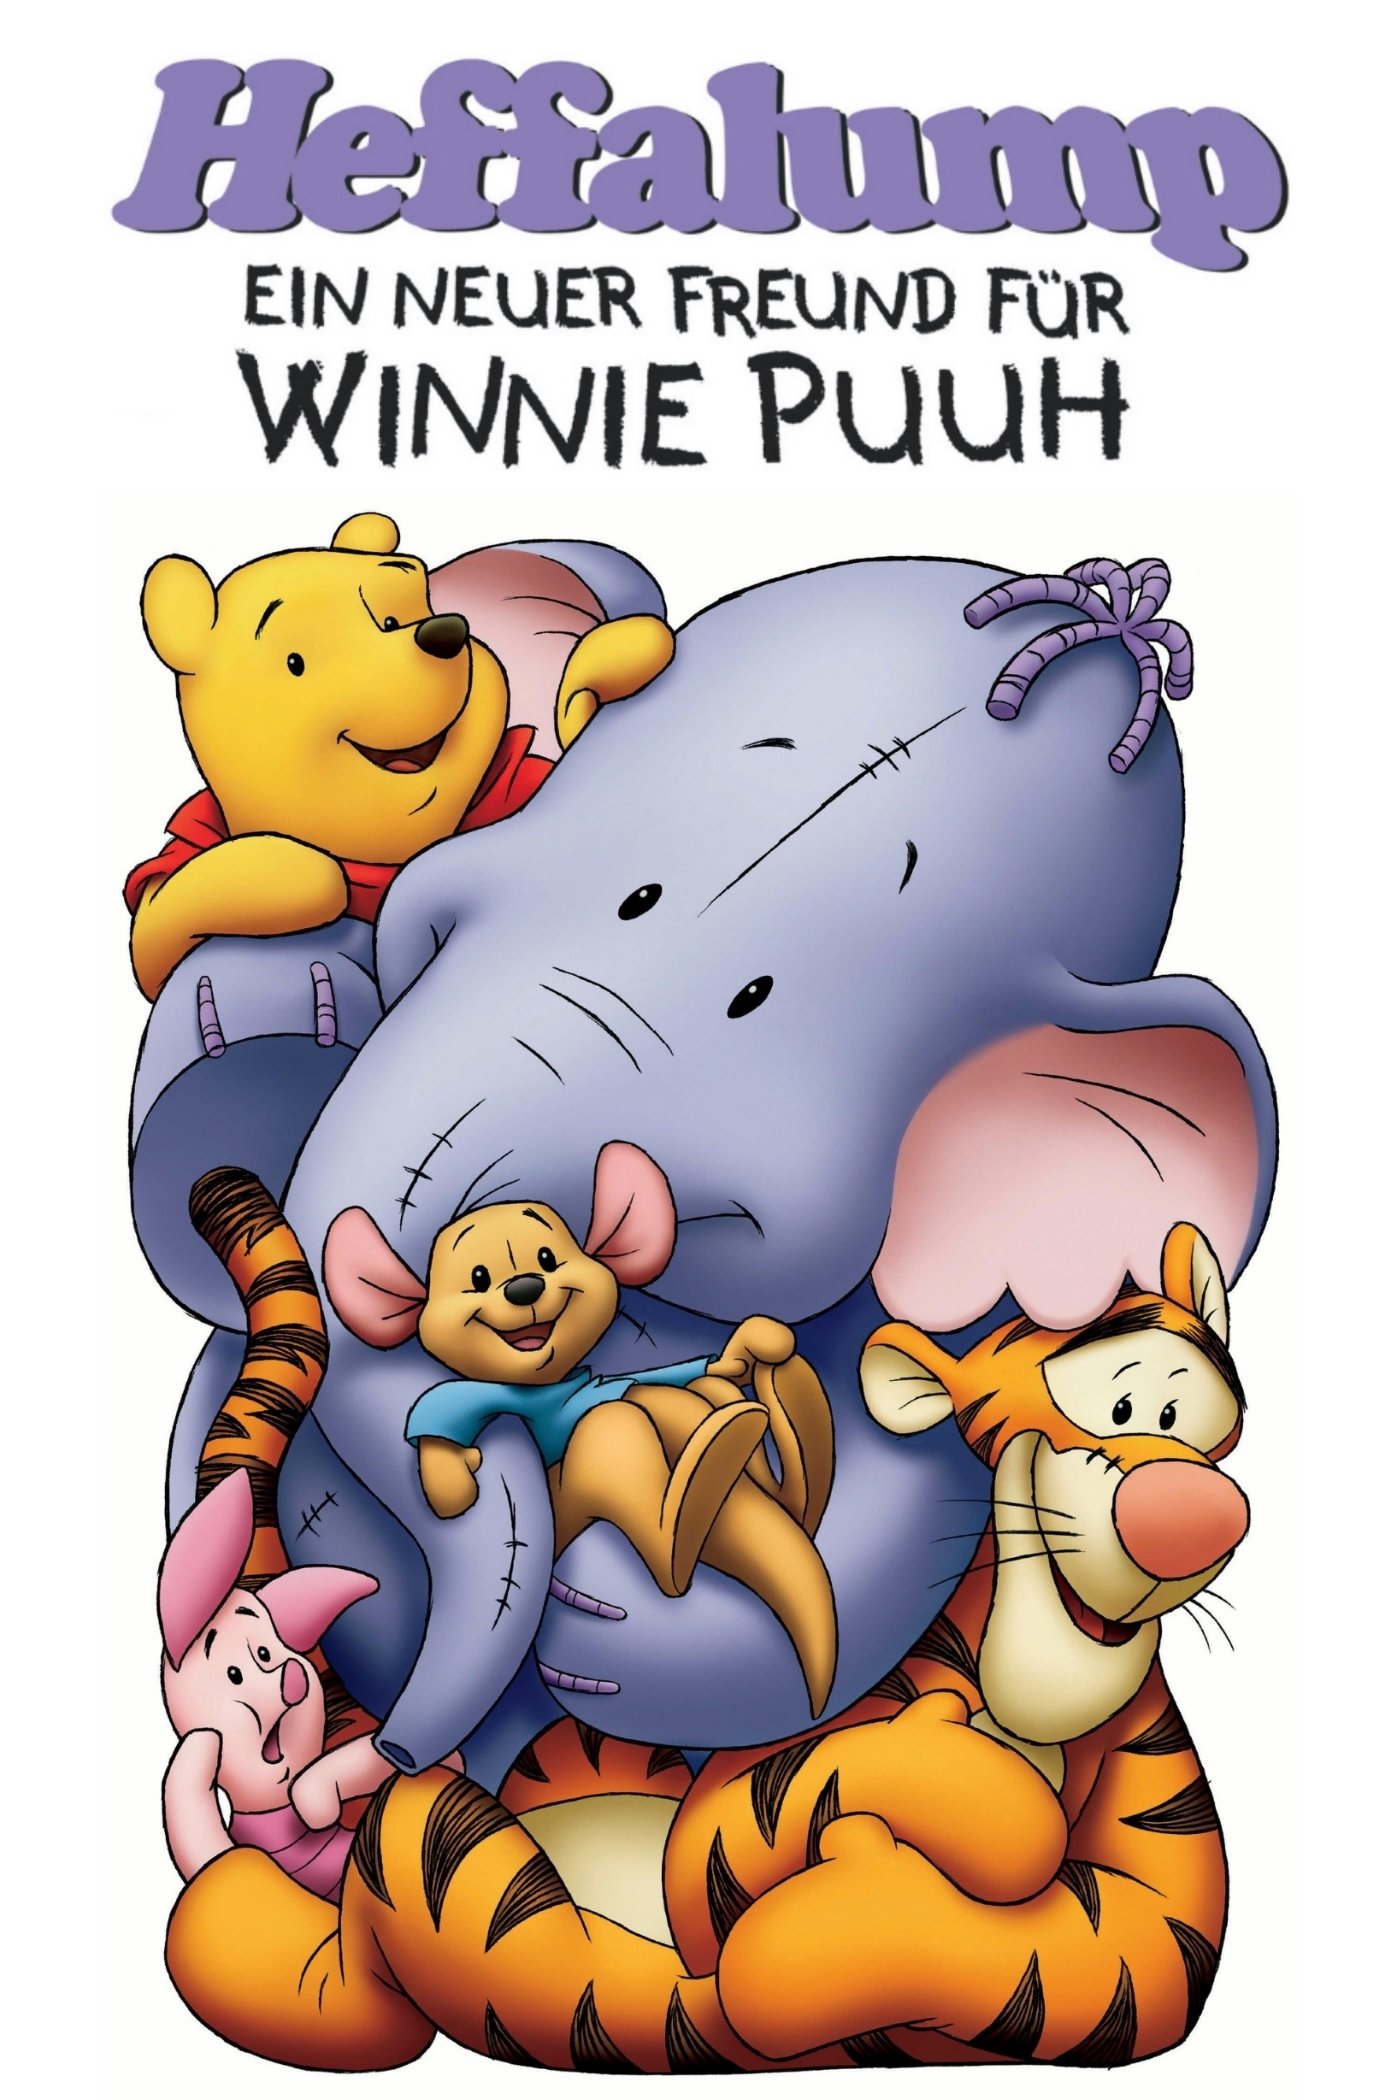 Plakat von "Heffalump - Ein neuer Freund für Winnie Puuh"